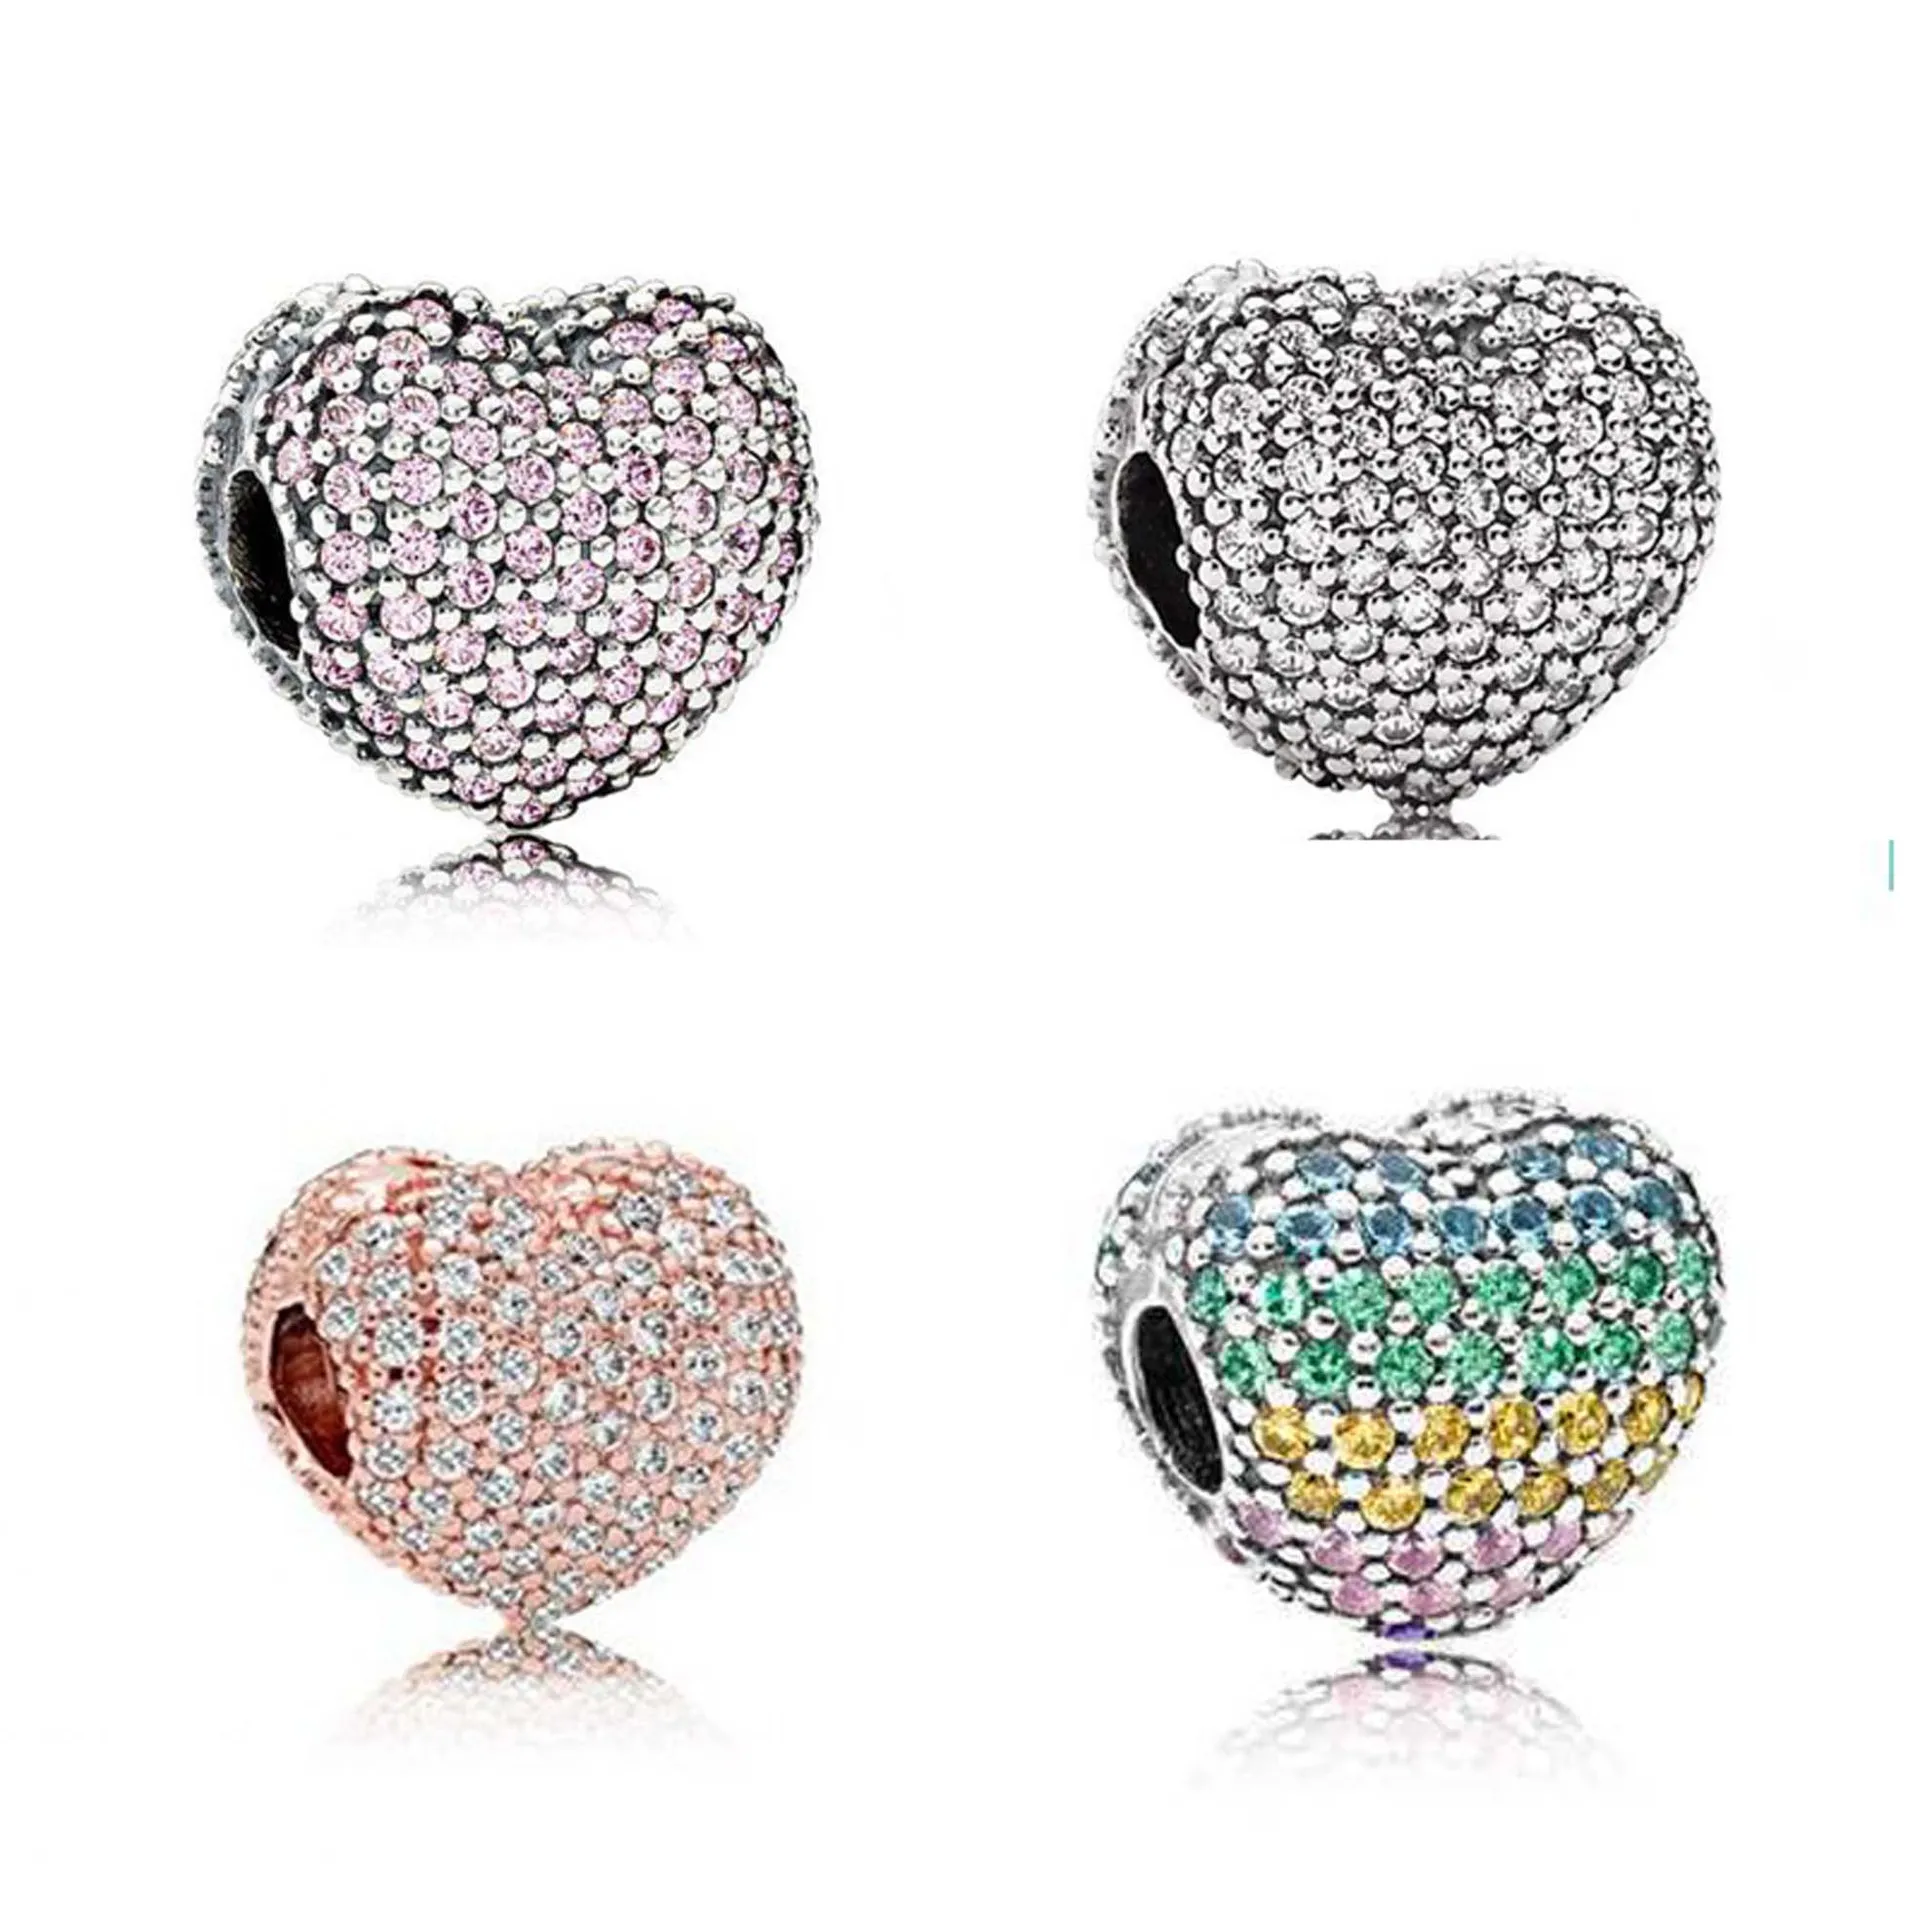 20 stücke legierung volle kristall herz perlen charms für pandora diy schmuck europäische armbänder armreifen frauen mädchen beste geschenke b018